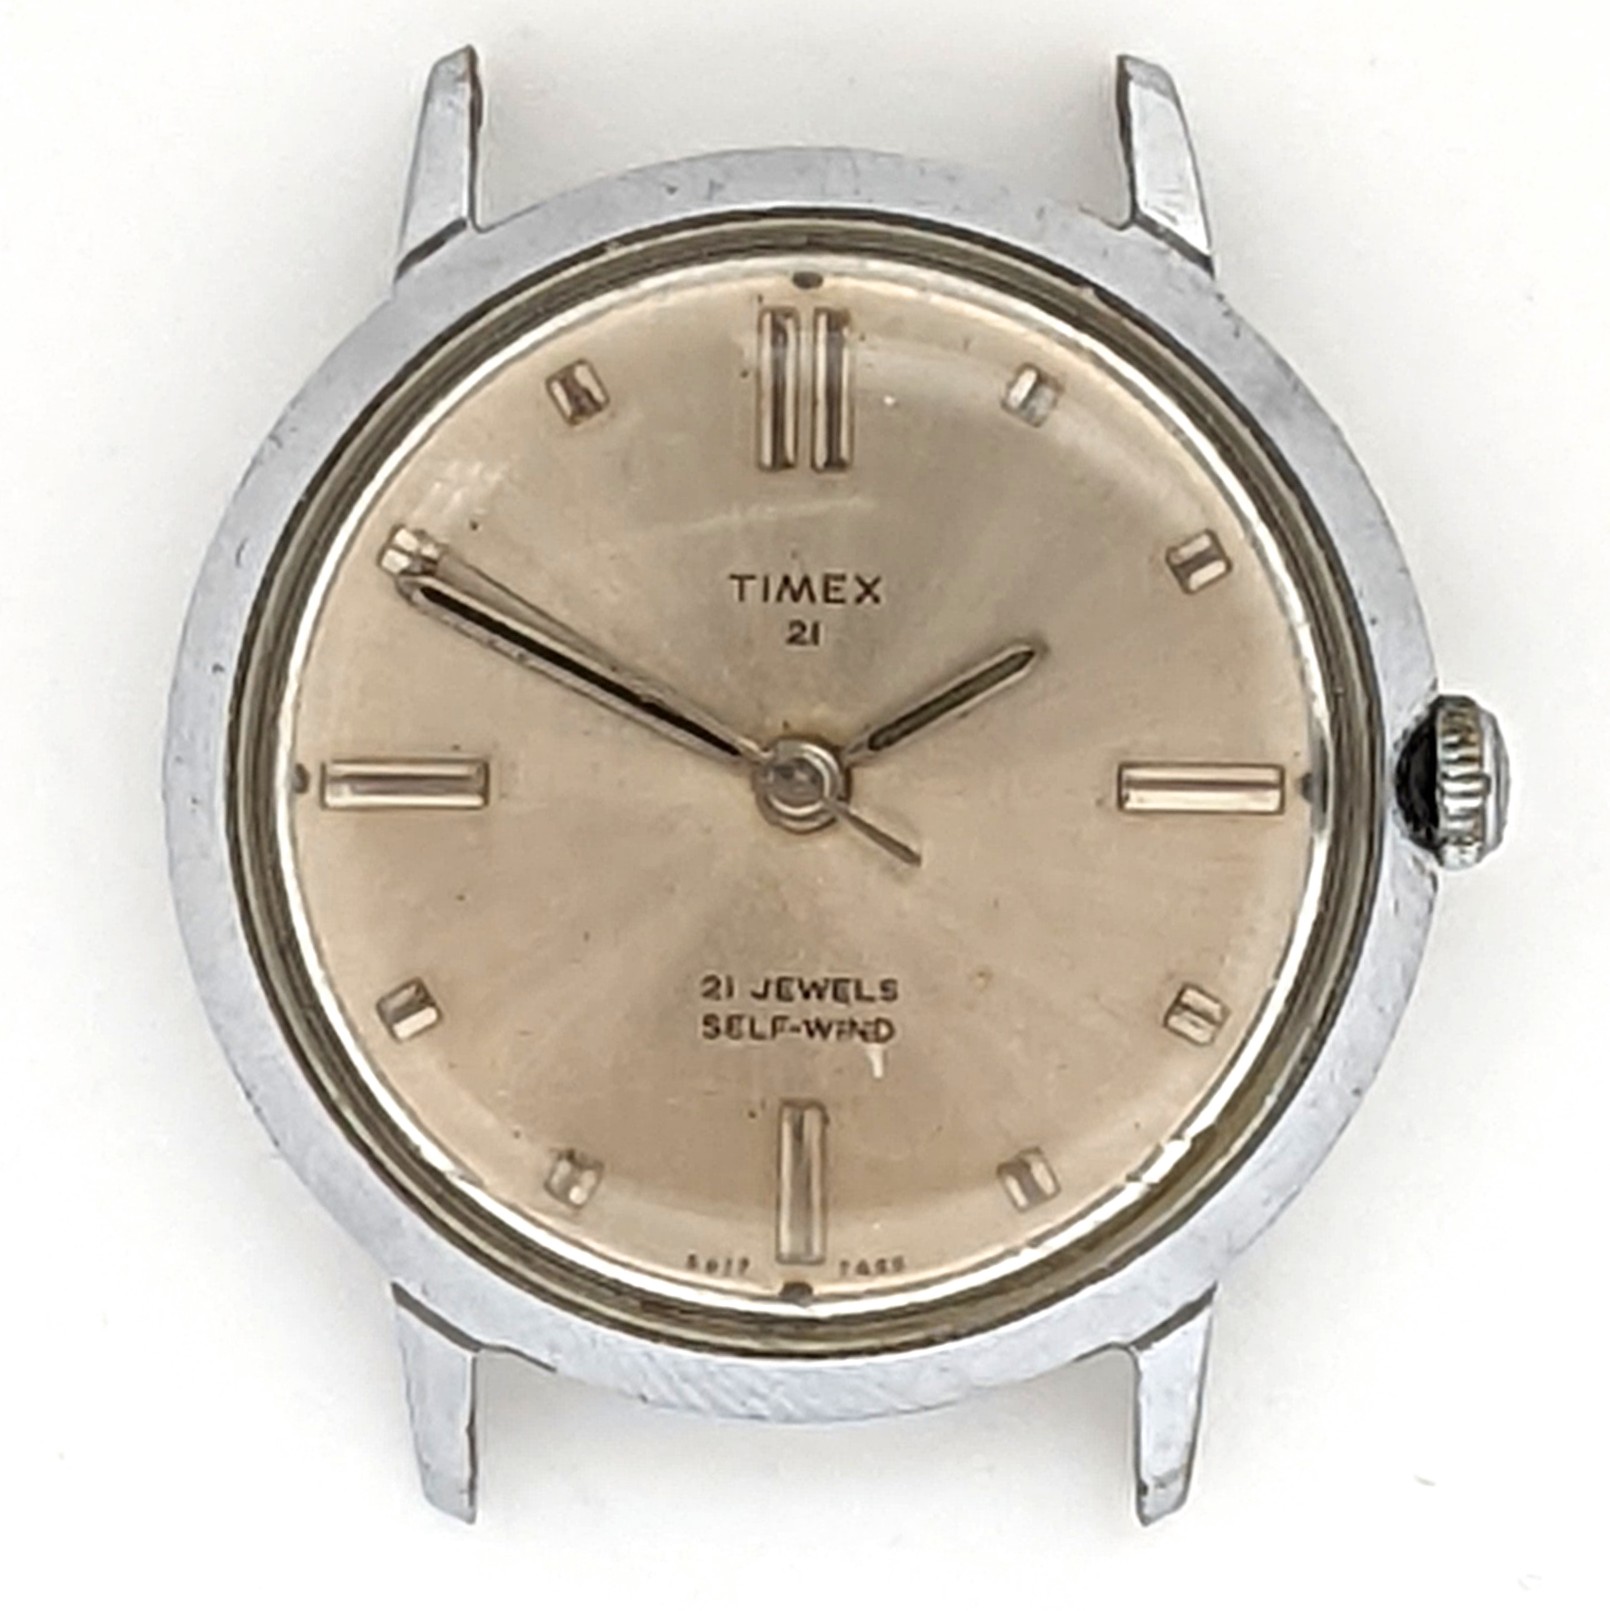 Timex 21 Jewel 6817 7468 [1968] Prestige